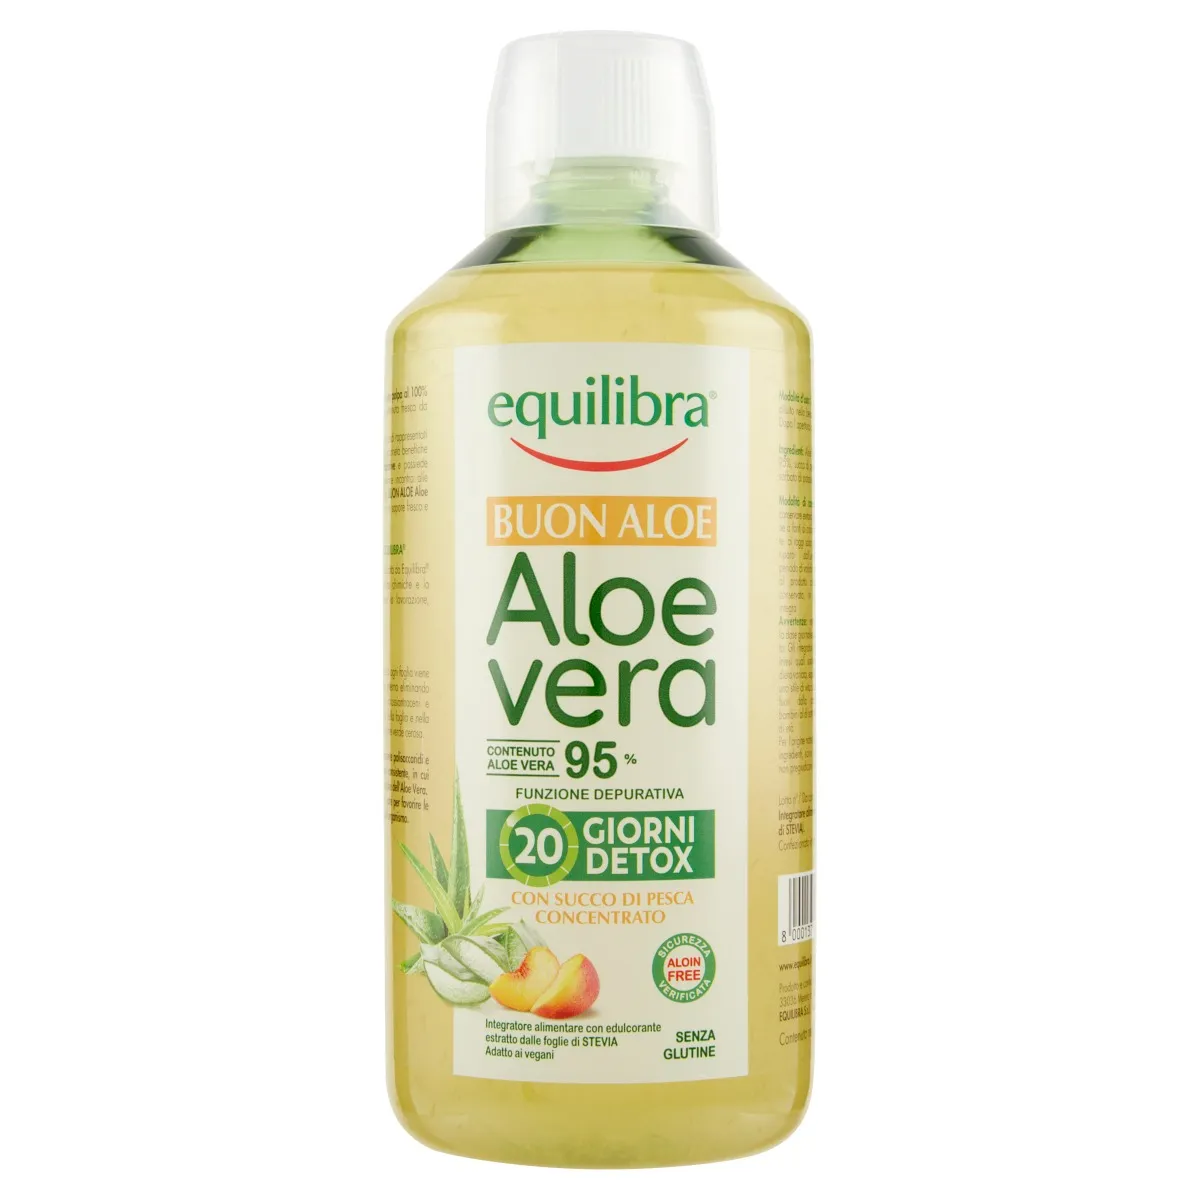 Equilibra Buon Aloe Vera 95% Con Succo Di Pesca 1L Azione Depurativa